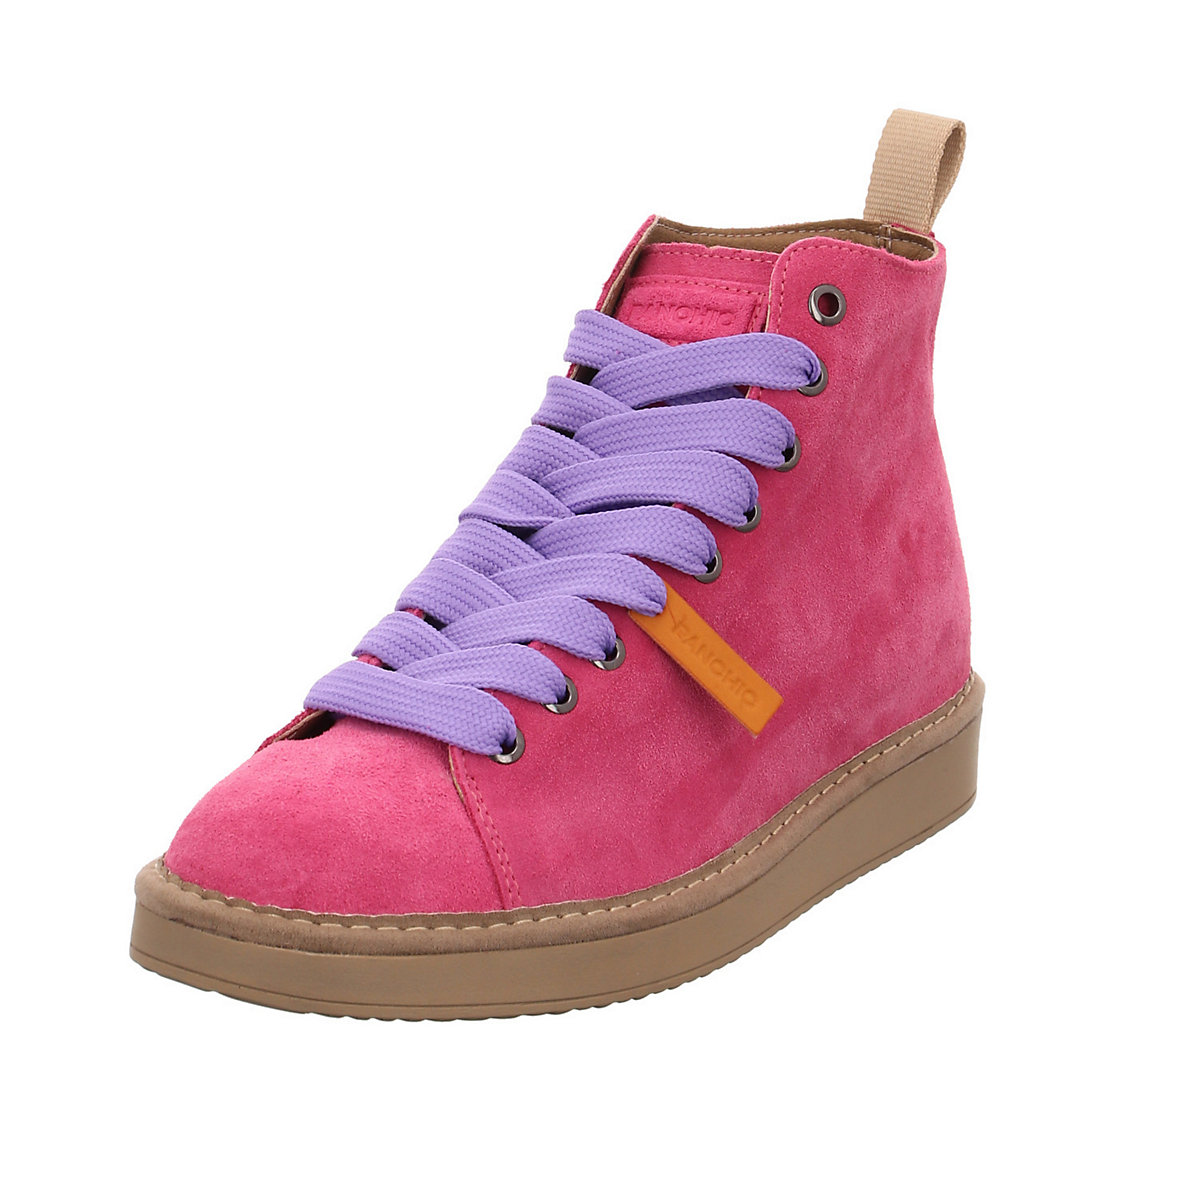 Damen Stiefeletten Schuhe P01 Boots Elegant Freizeit Veloursleder uni Schnürstiefeletten pink